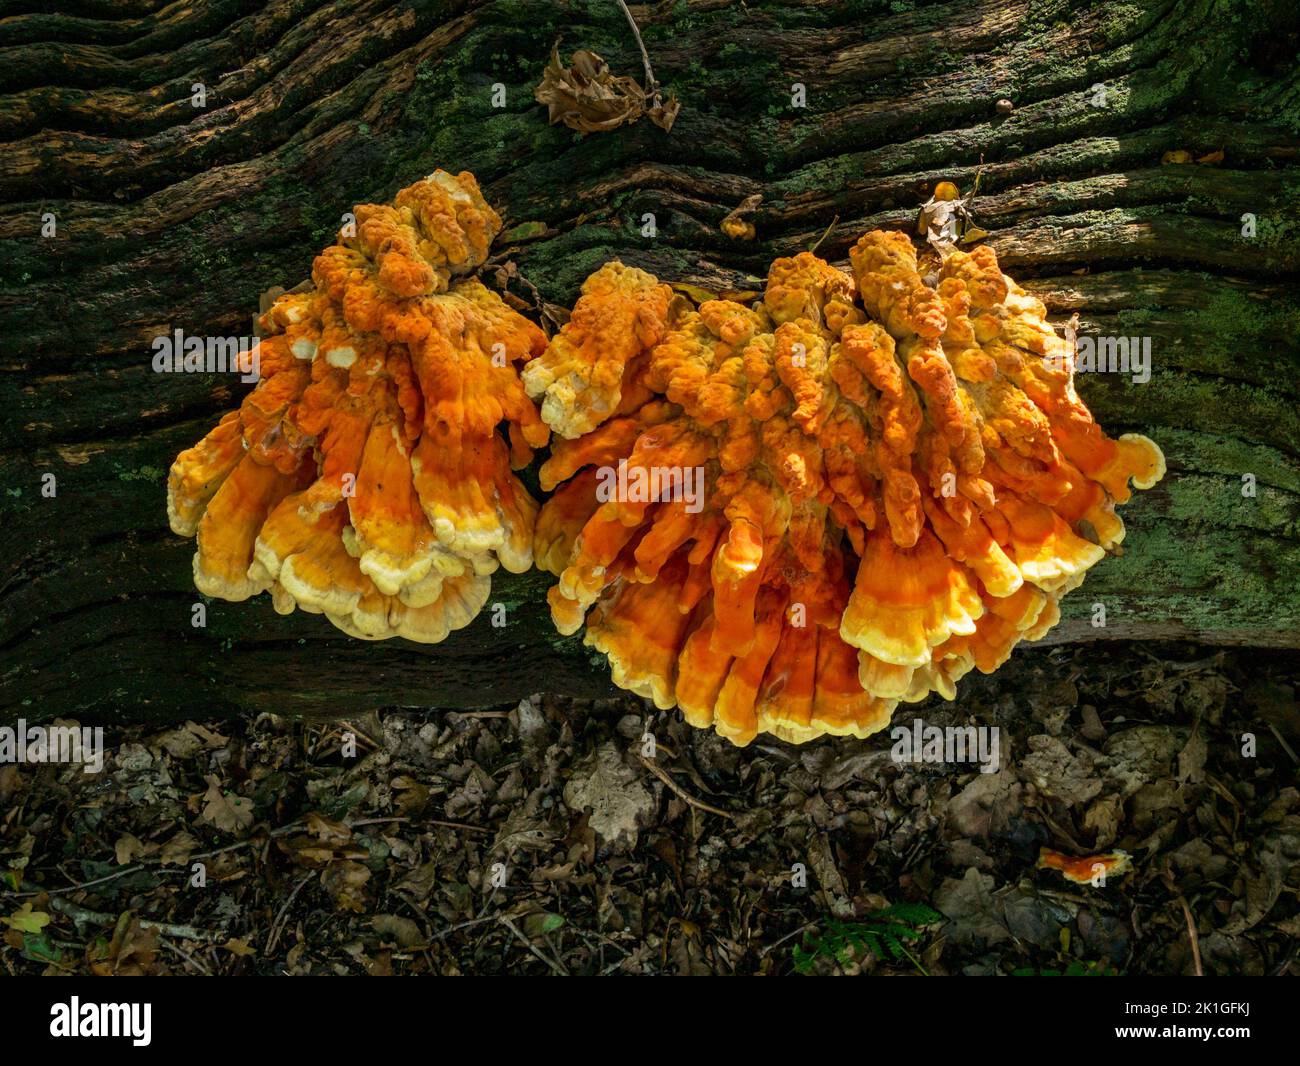 Le gros 'poulet des bois' ( Laetiporus sulfureus ) est un champignon qui pousse sur le tronc d'arbre tombé, Bradgate Park, Angleterre, Royaume-Uni Banque D'Images